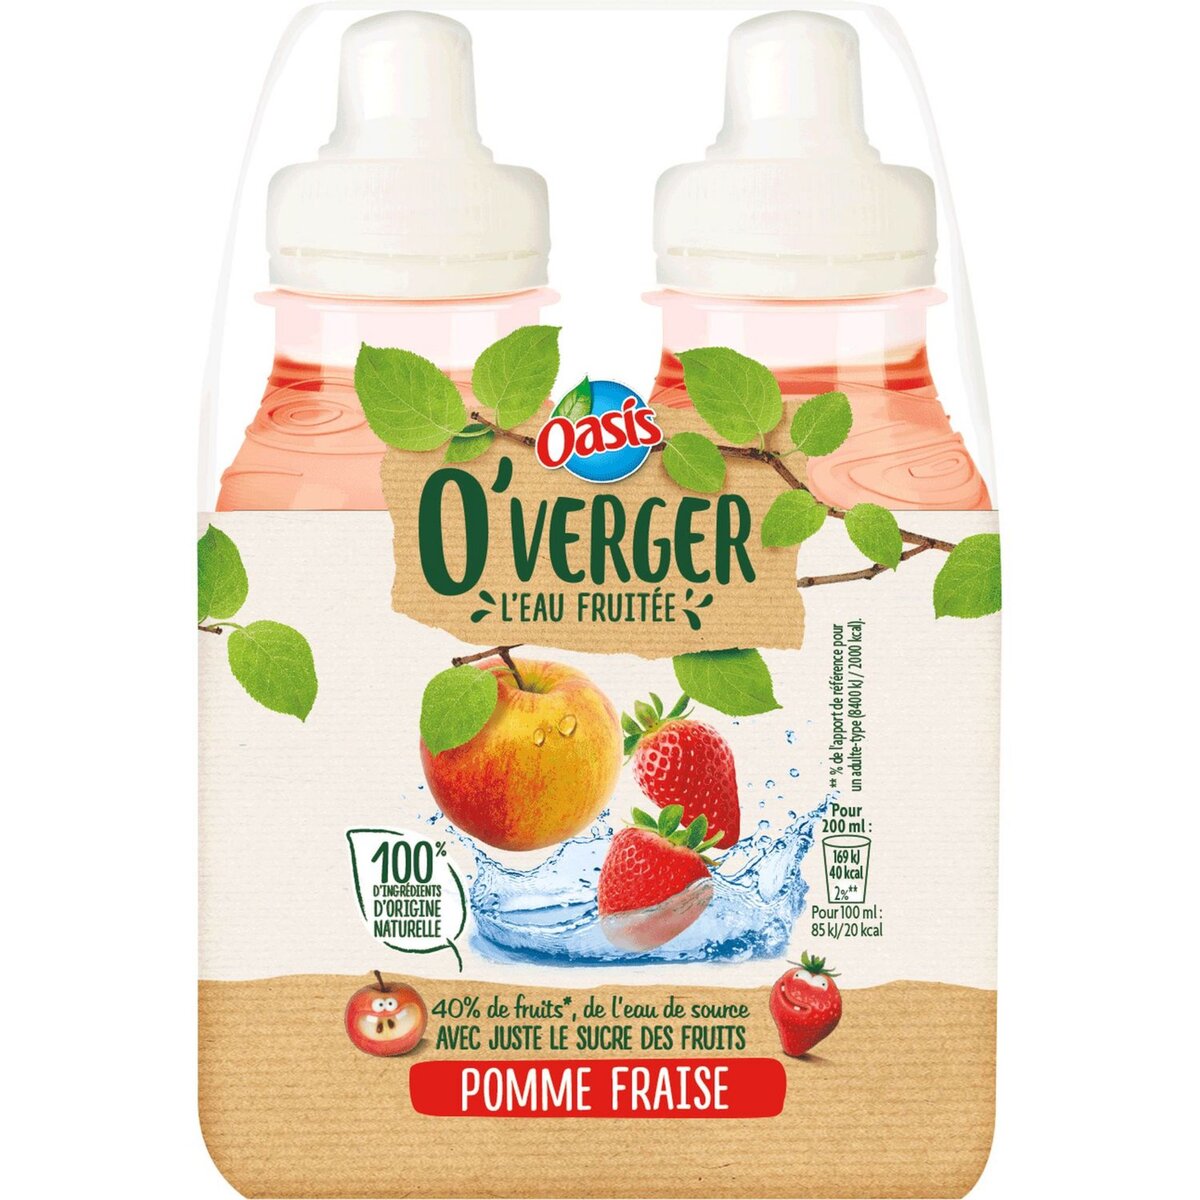 OASIS O'Verger eau fruitée saveur pomme fraise 4x20cl